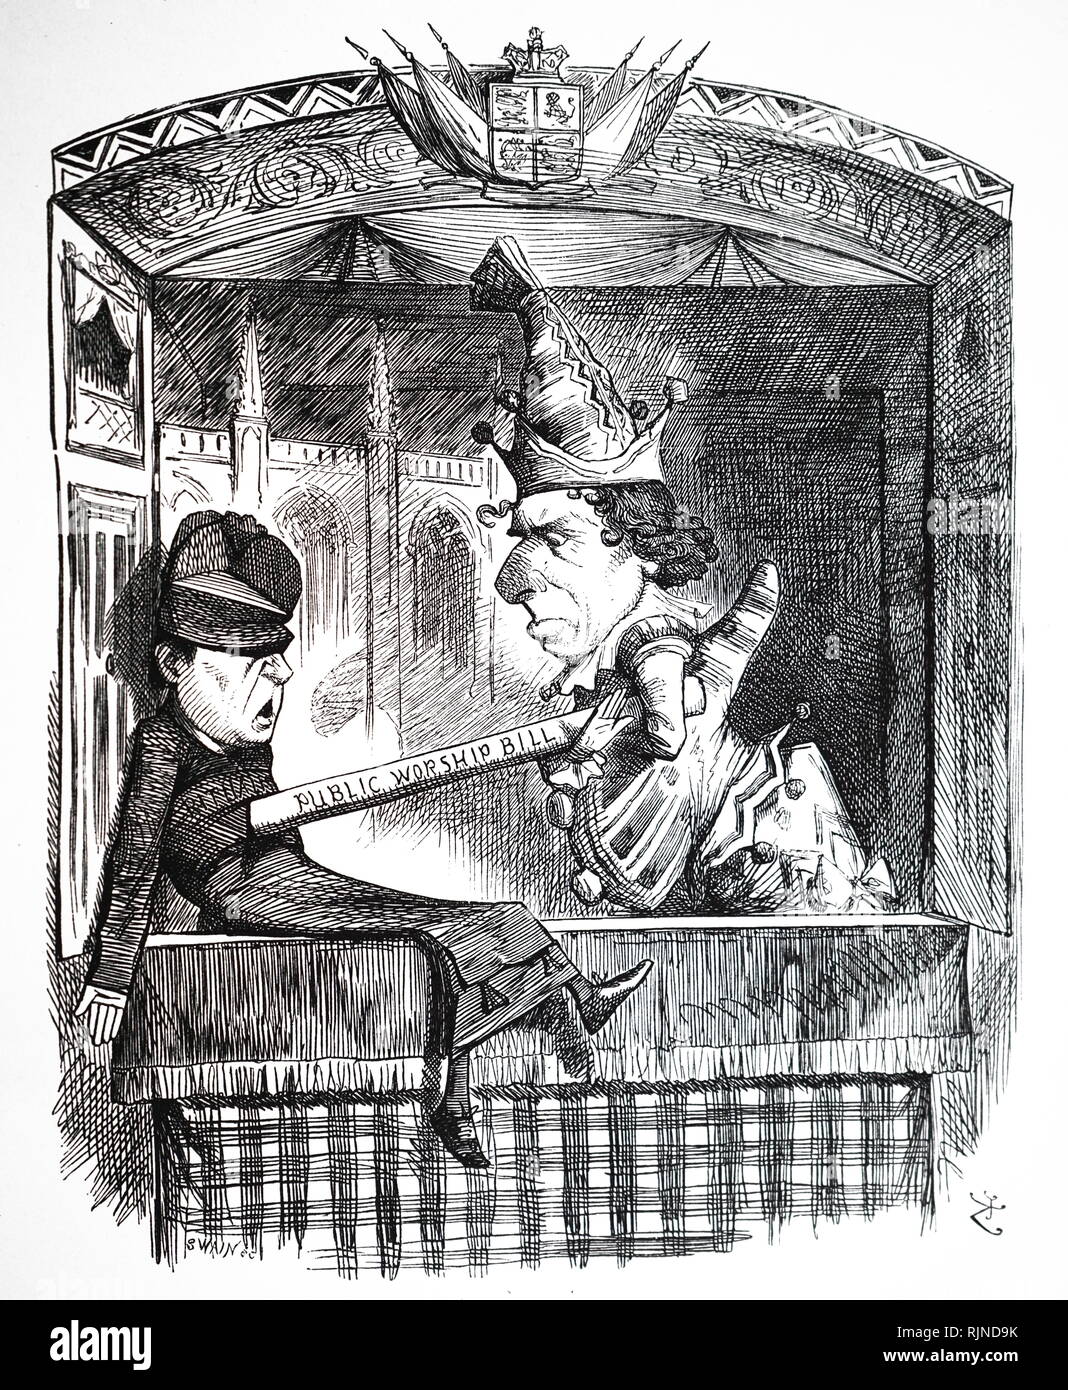 Eine Karikatur kommentiert die öffentliche Verehrung der Verordnung fungieren. Illustriert von John Tenniel. Vom 19. Jahrhundert Stockfoto